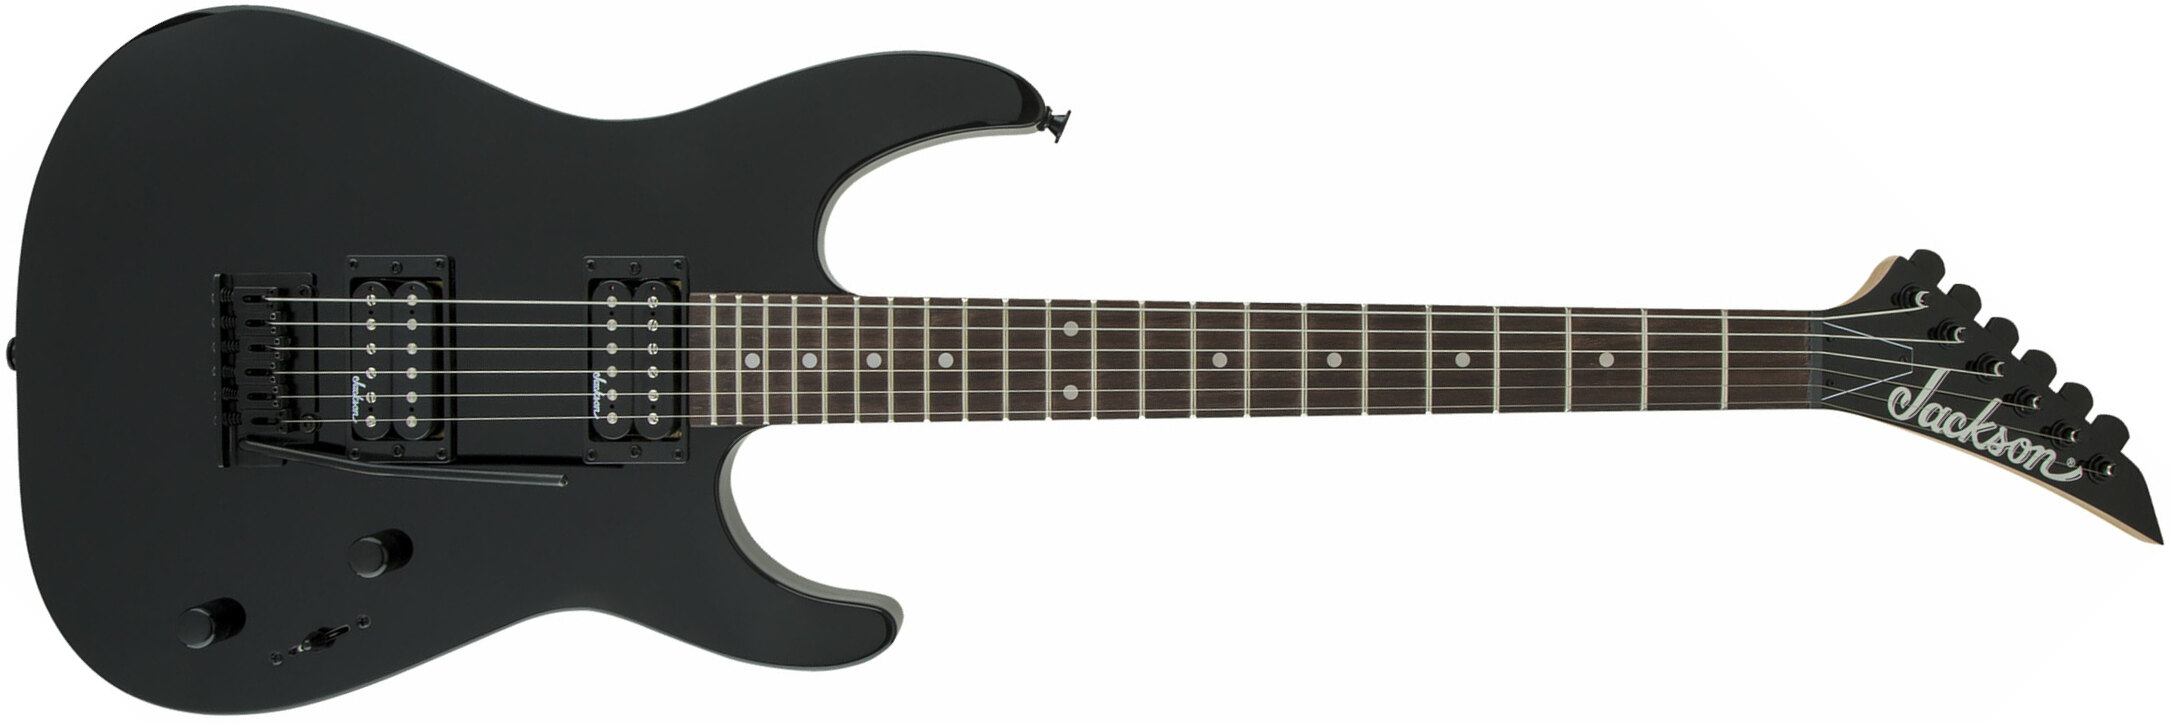 Jackson Dinky Js11 2h Trem Ama - Gloss Black - Guitarra eléctrica con forma de str. - Main picture